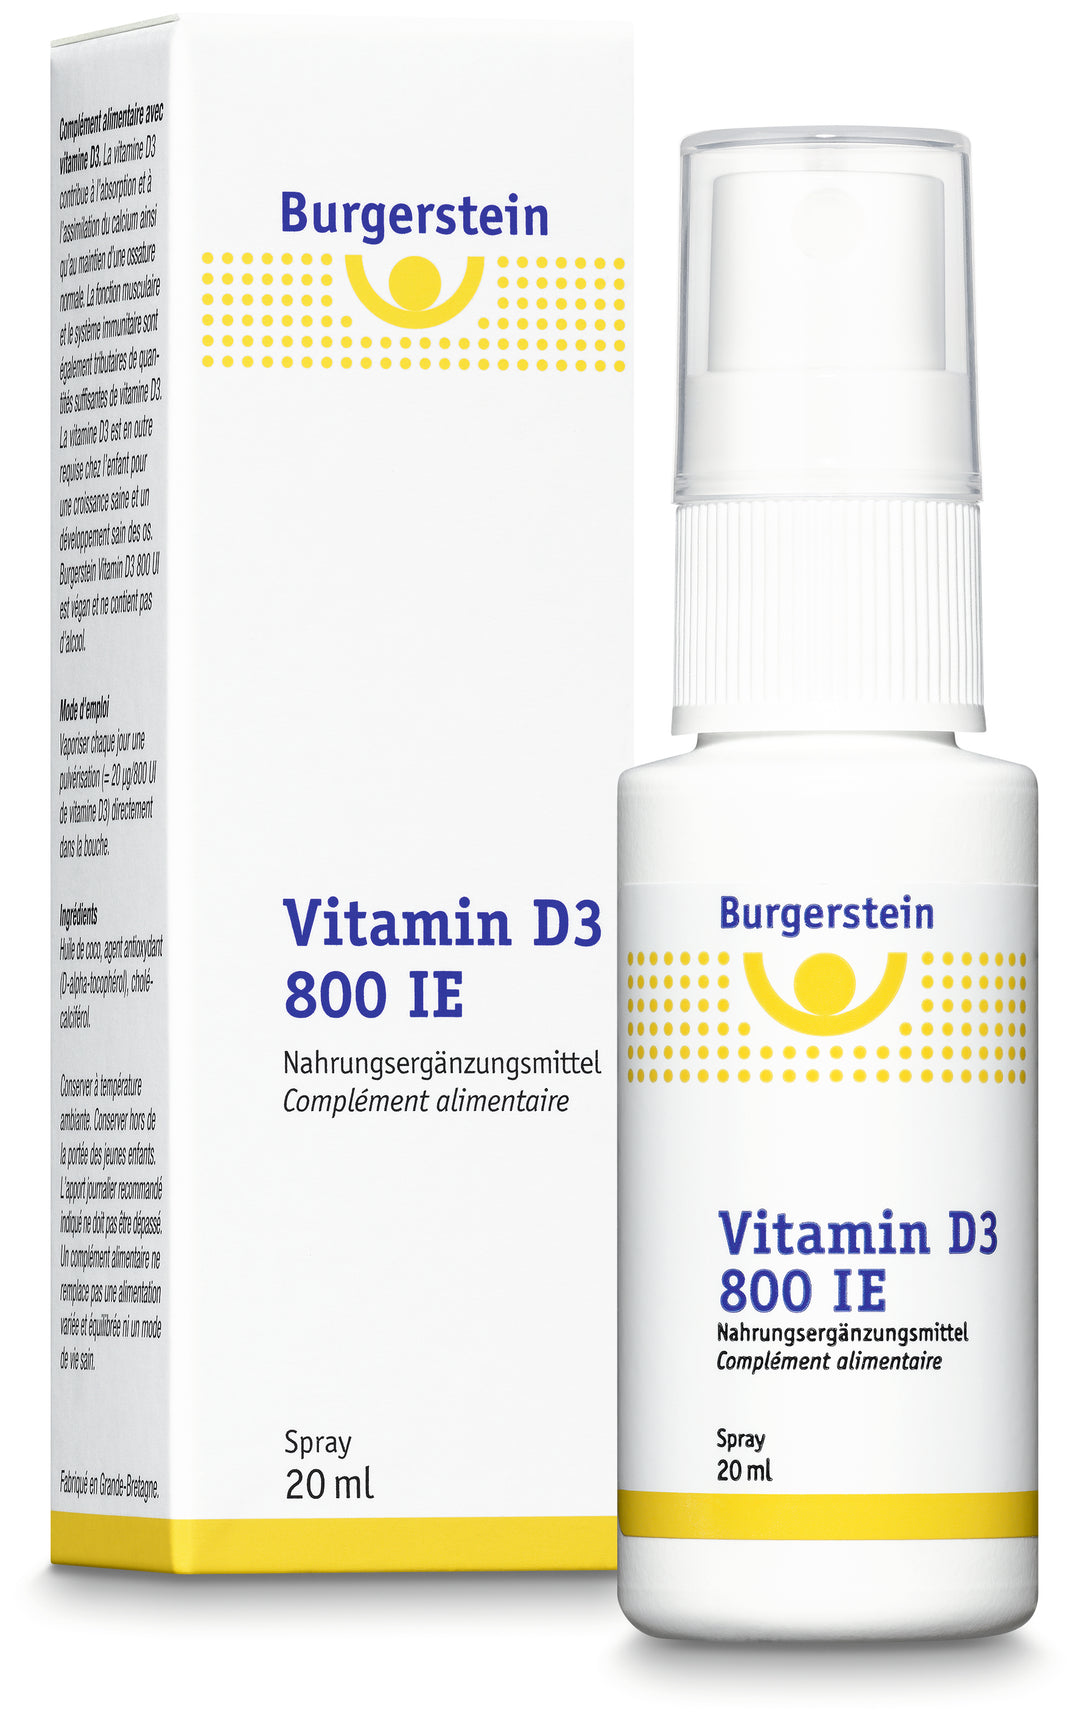 BURGERSTEIN Vitamin D3 800 IU spray 20 ml